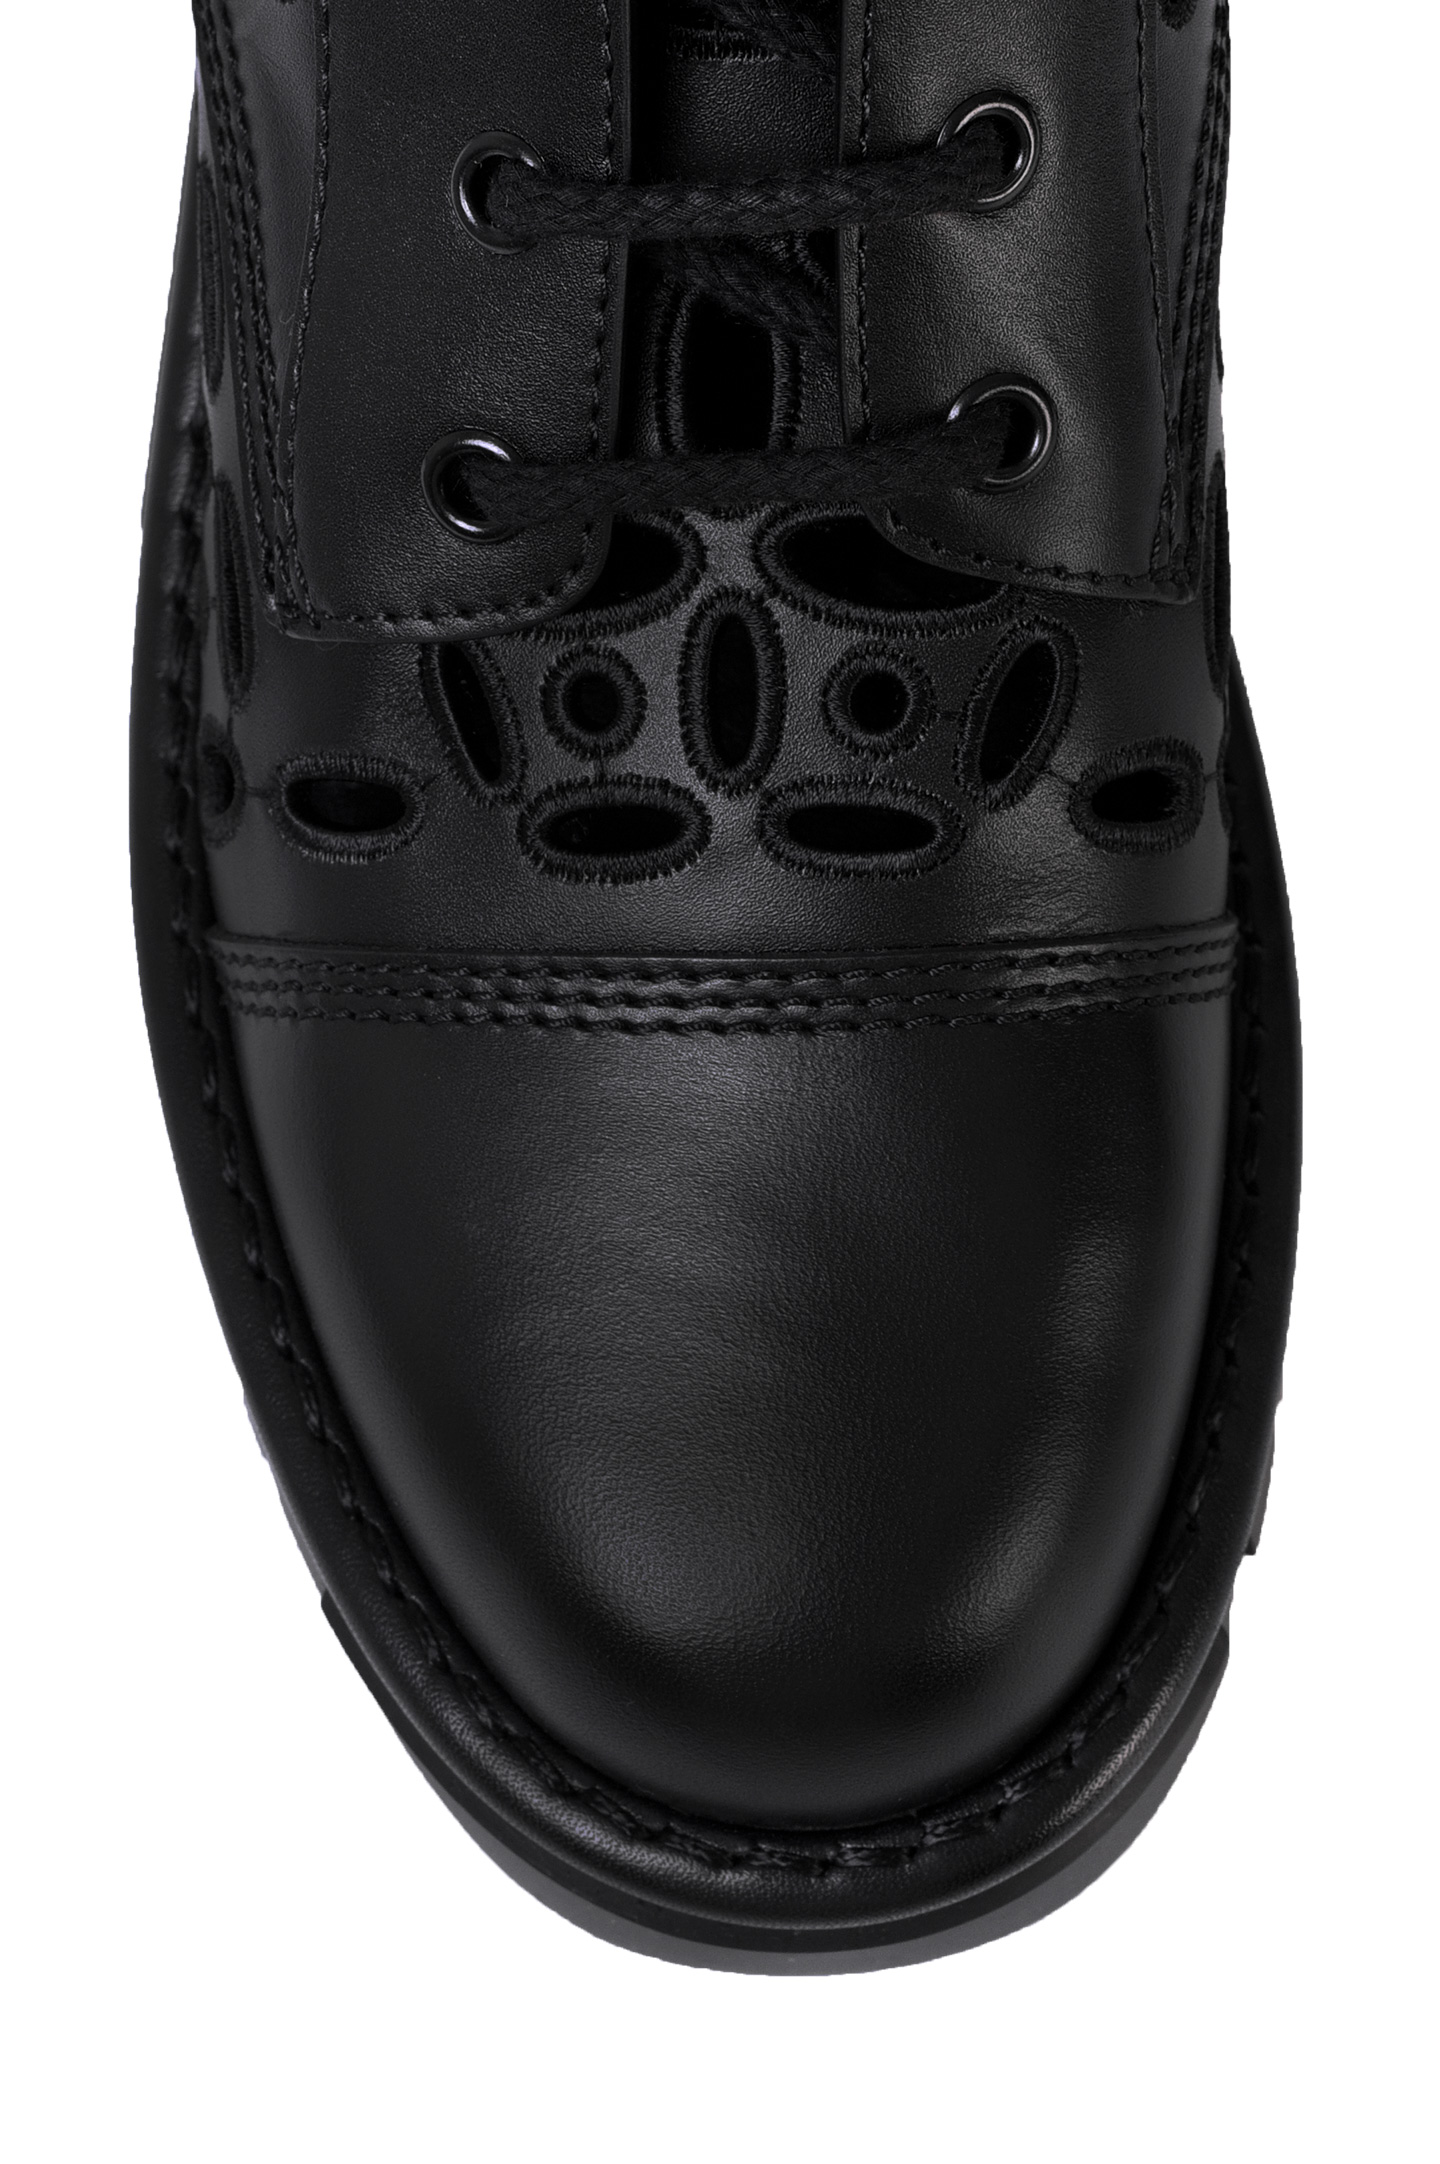 Ботинки VALENTINO GARAVANI WW2S0CN7NPC, цвет: Черный, Женский